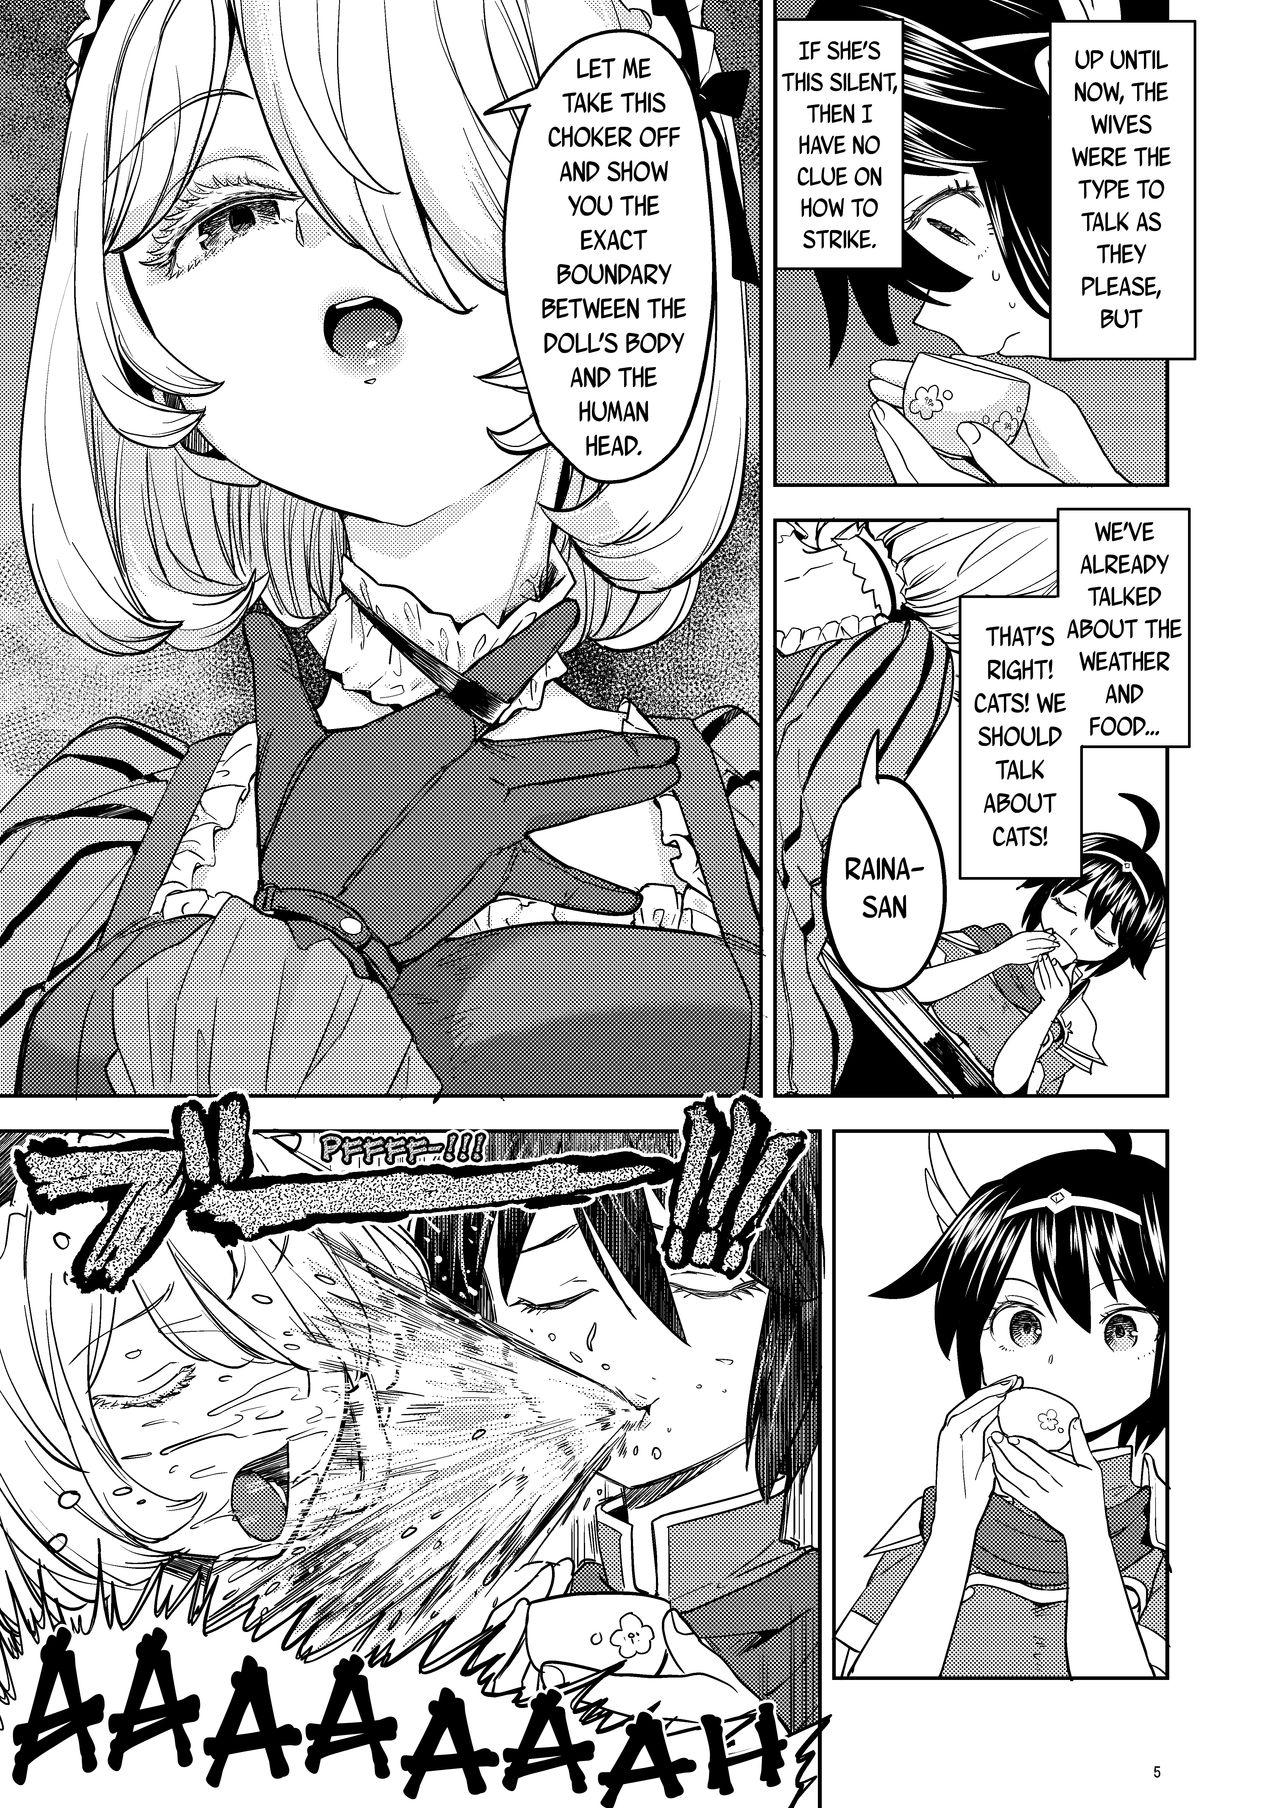 Tugging Onna Yuusha ni Tensei Shitara Mazoku no Tsuma ga 5-nin mo Irurashii 4 | Reincarnated as a Female Hero Who Seems to Have 5 Demon Wives 4 - Original Blackmail - Page 6